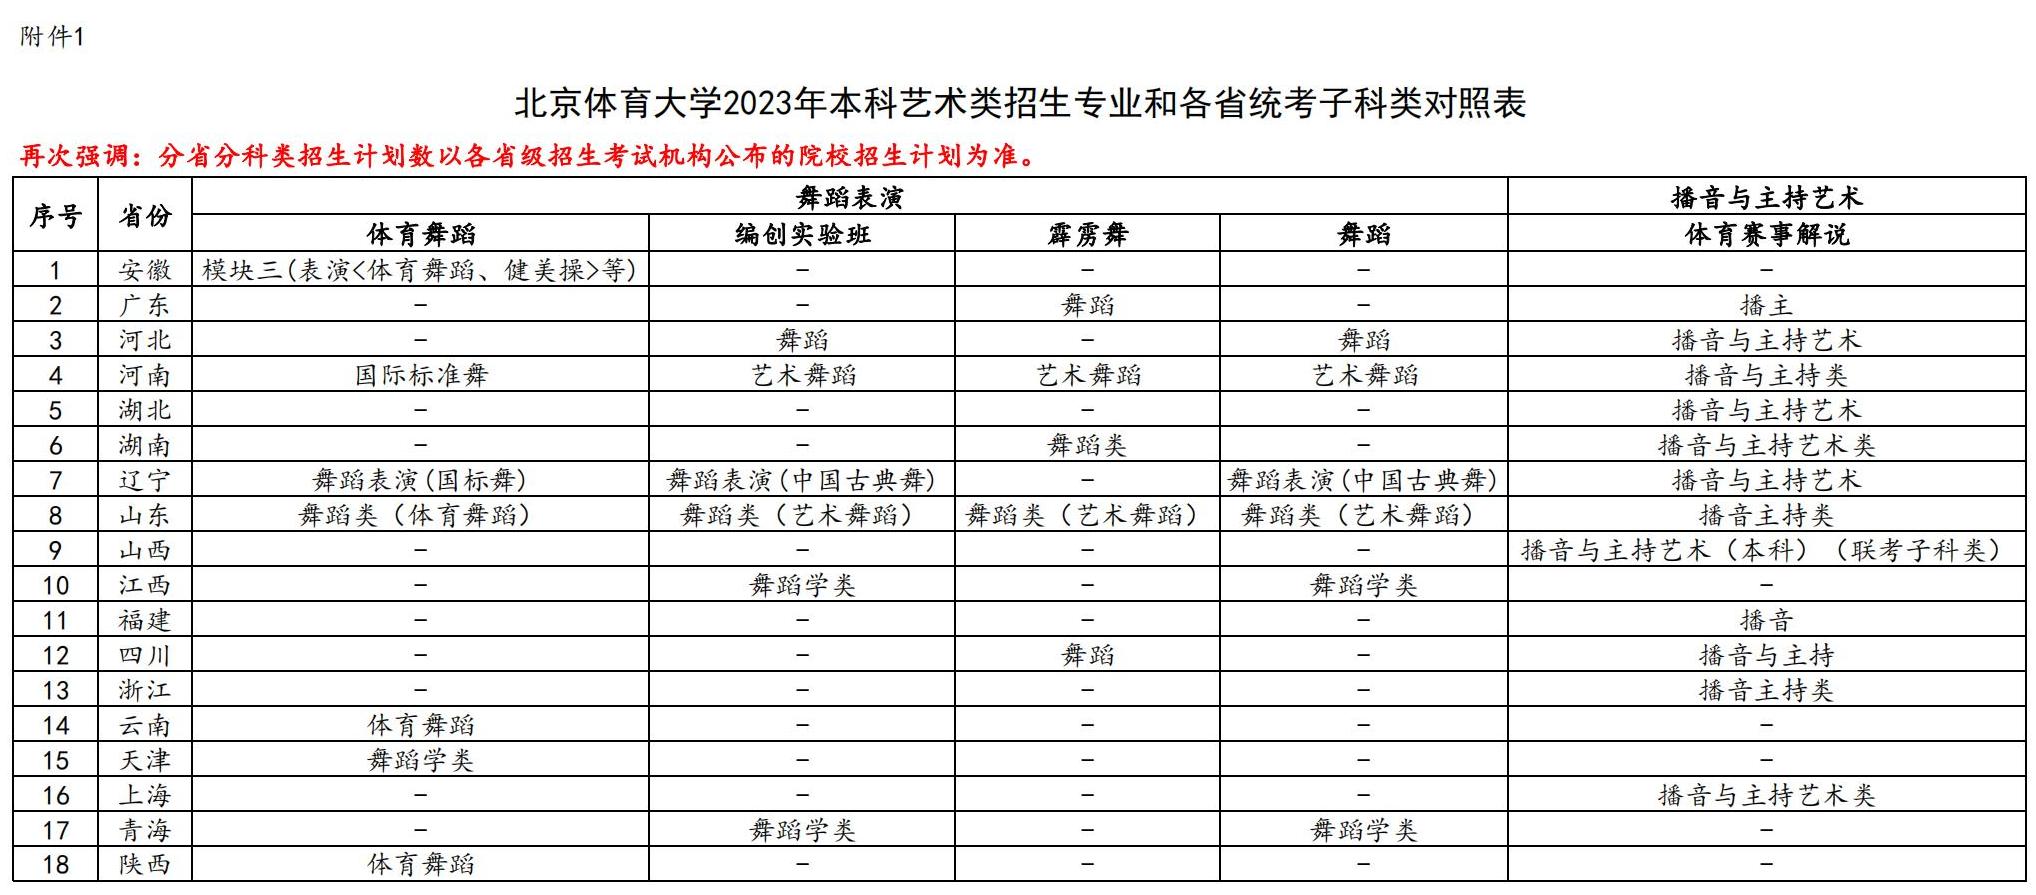 2023年北京体育大学艺术类舞蹈专业招生考试公告